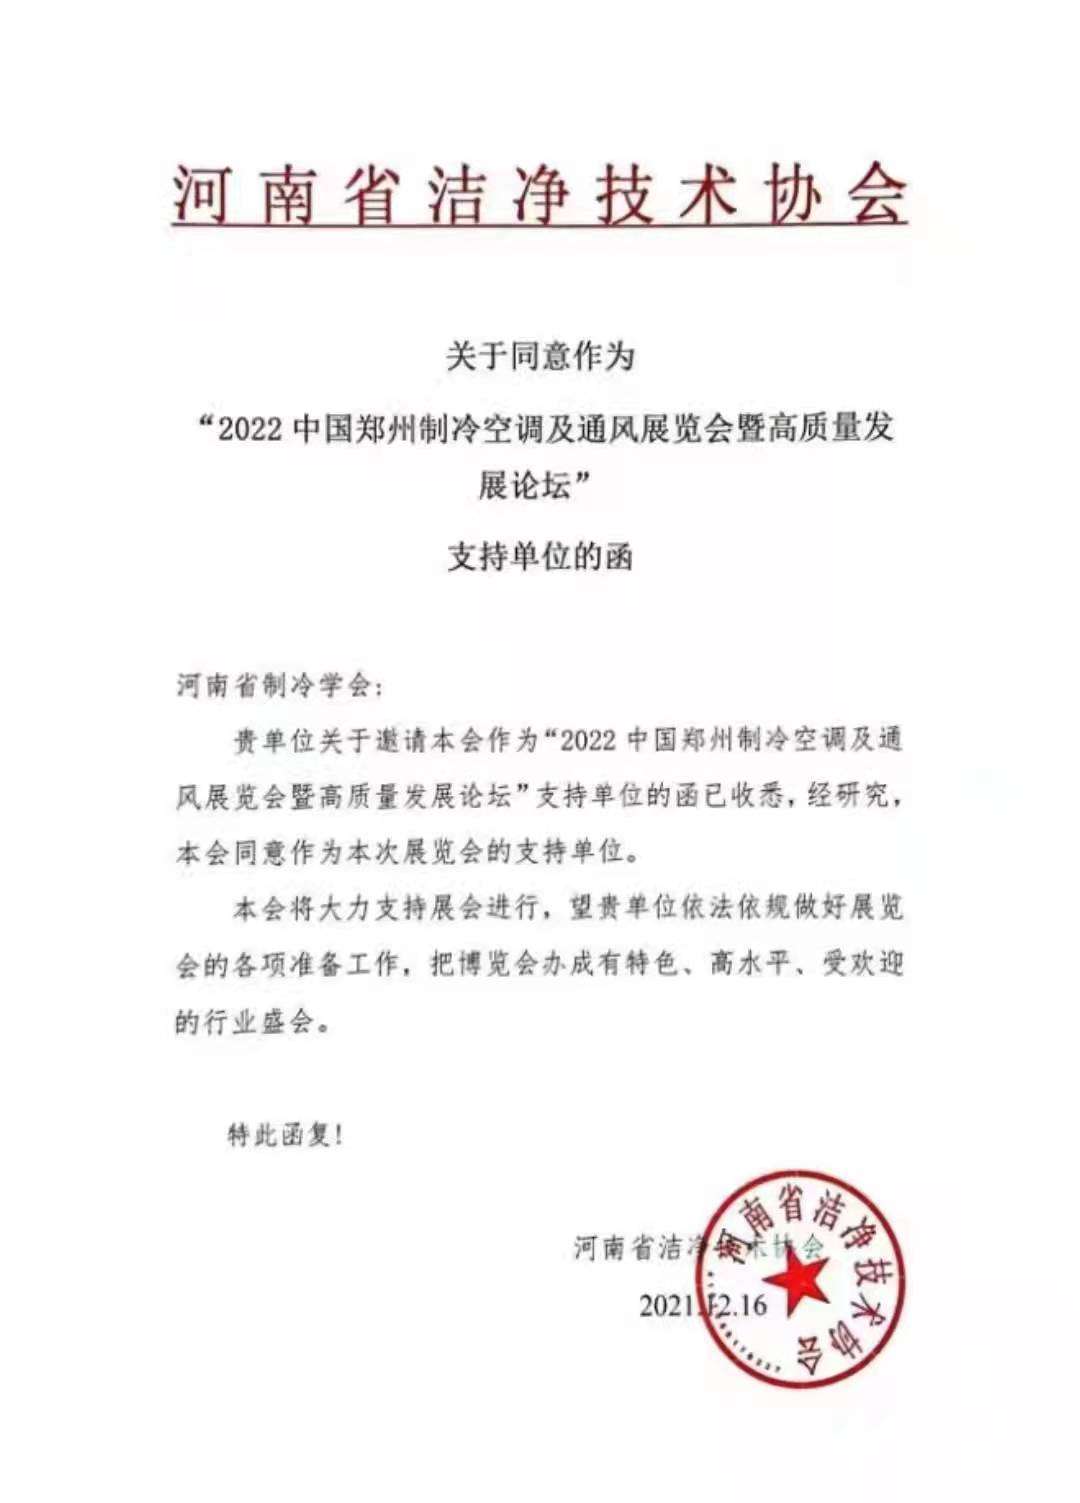 感谢河南省洁净技术协会对2022郑州制冷展的大力